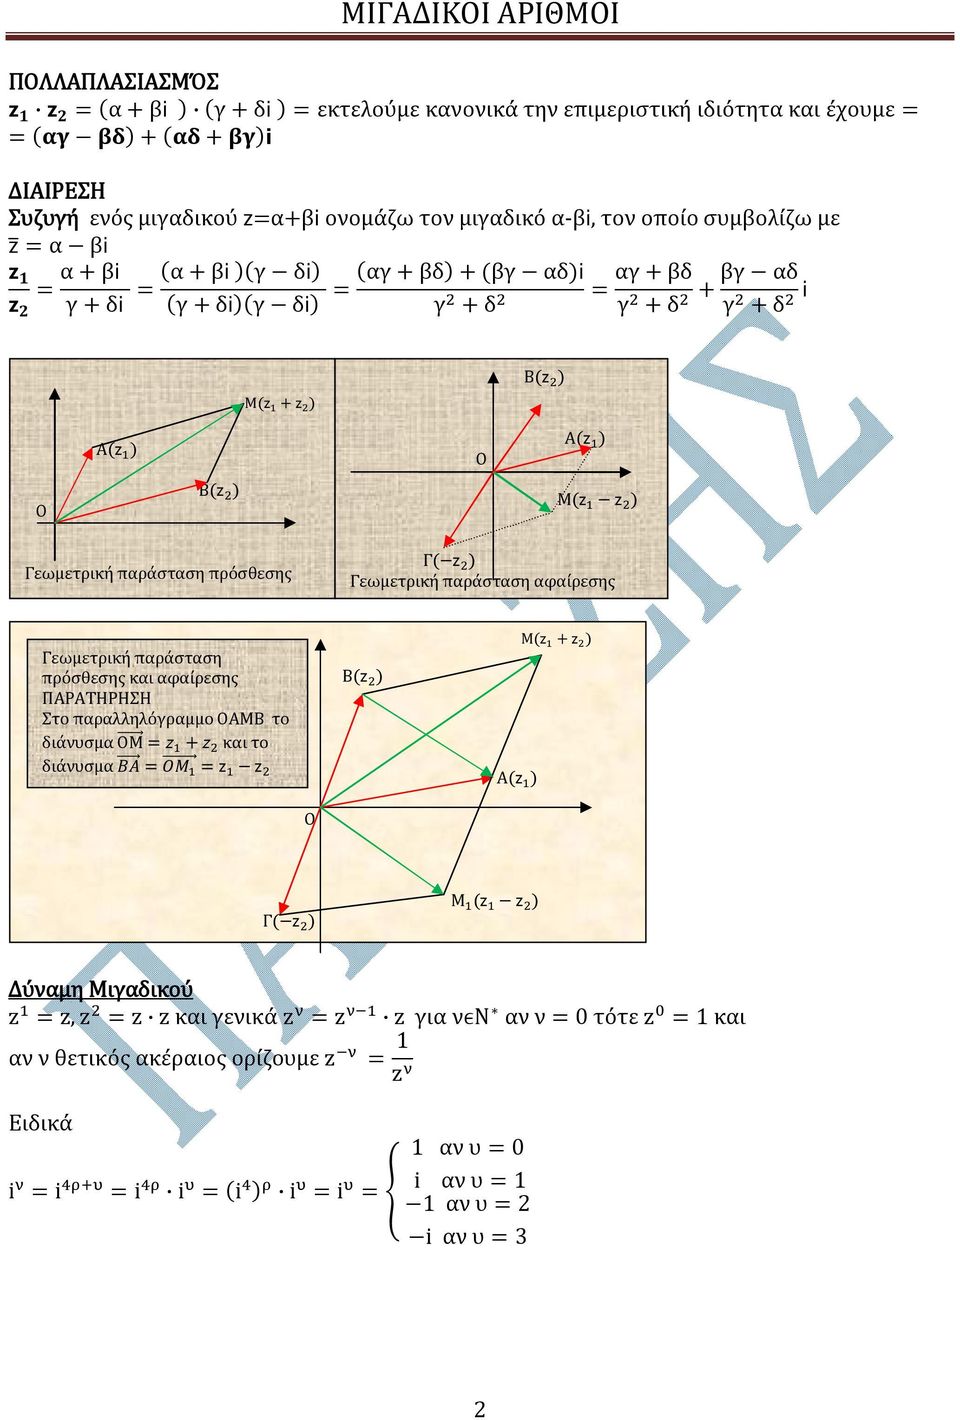 ) Μ( ) Γεωμετρική παράσταση πρόσθεσης Γ( ) Γεωμετρική παράσταση αφαίρεσης Γεωμετρική παράσταση πρόσθεσης και αφαίρεσης ΠΑΡΑΤΗΡΗΣΗ Στο παραλληλόγραμμο ΟΑΜΒ το διάνυσμα ΟΜ + και